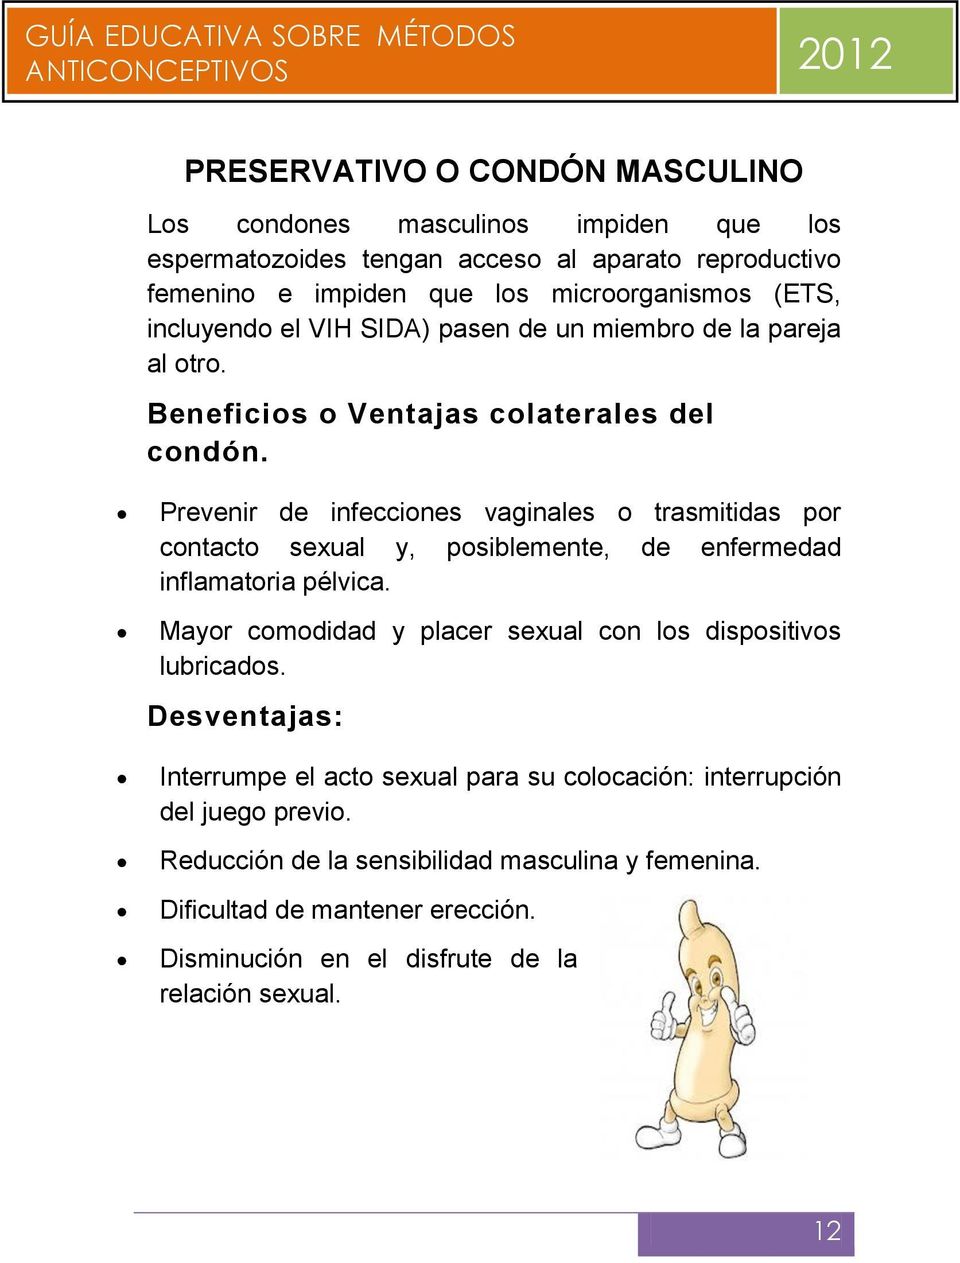 Prevenir de infecciones vaginales o trasmitidas por contacto sexual y, posiblemente, de enfermedad inflamatoria pélvica.